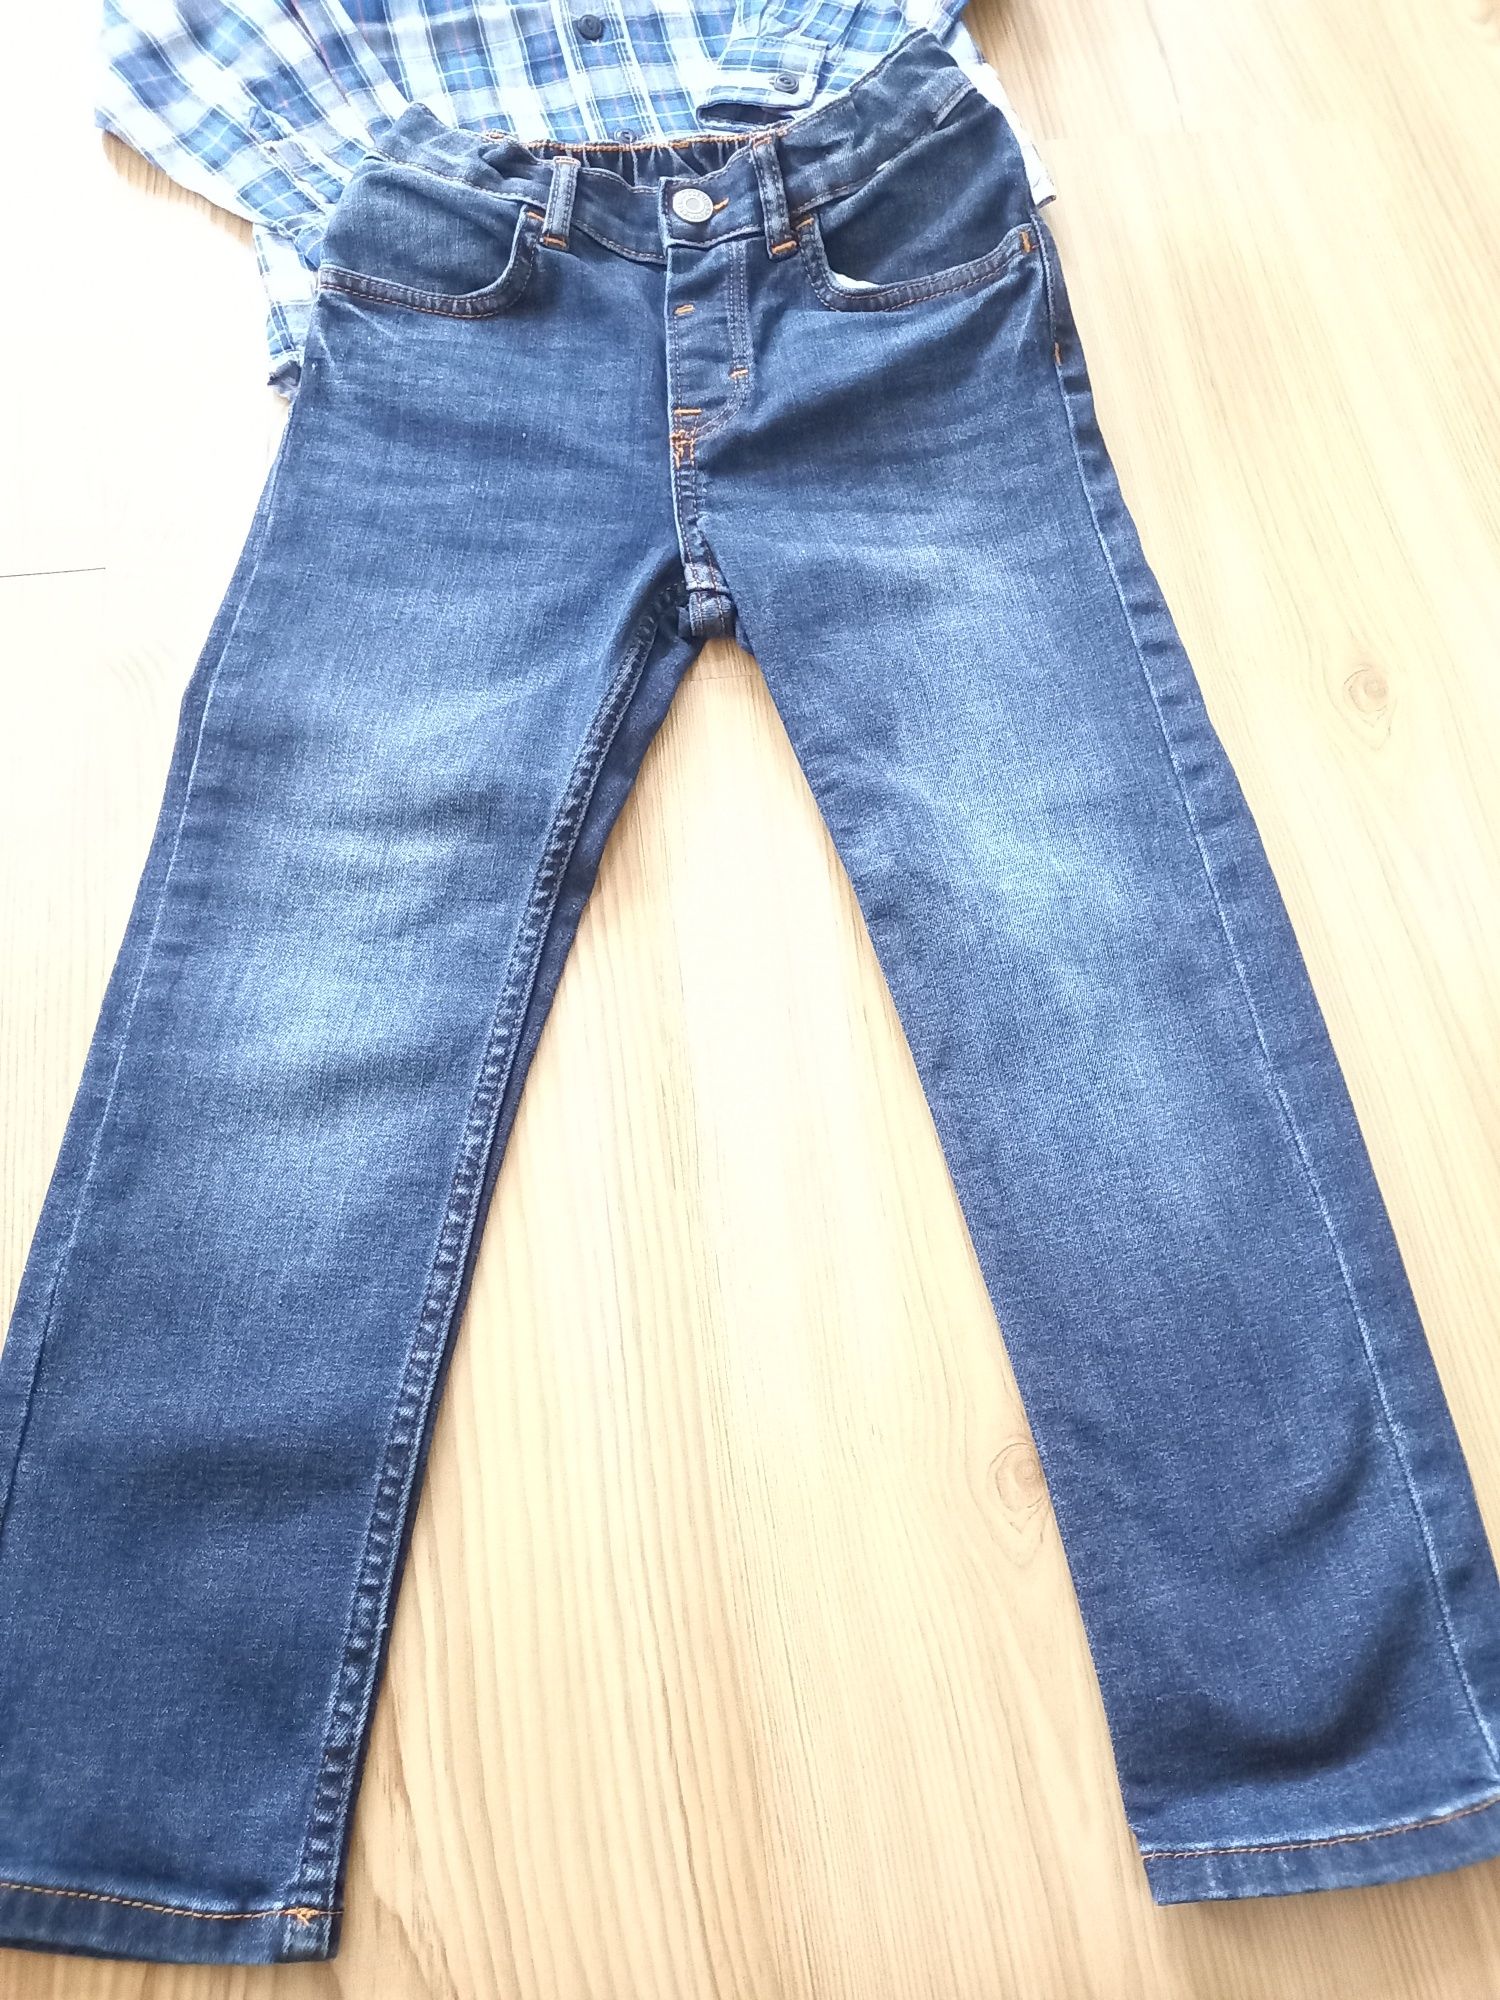 Zestaw dla chlopca  koszula Gap+ jeansy r.116